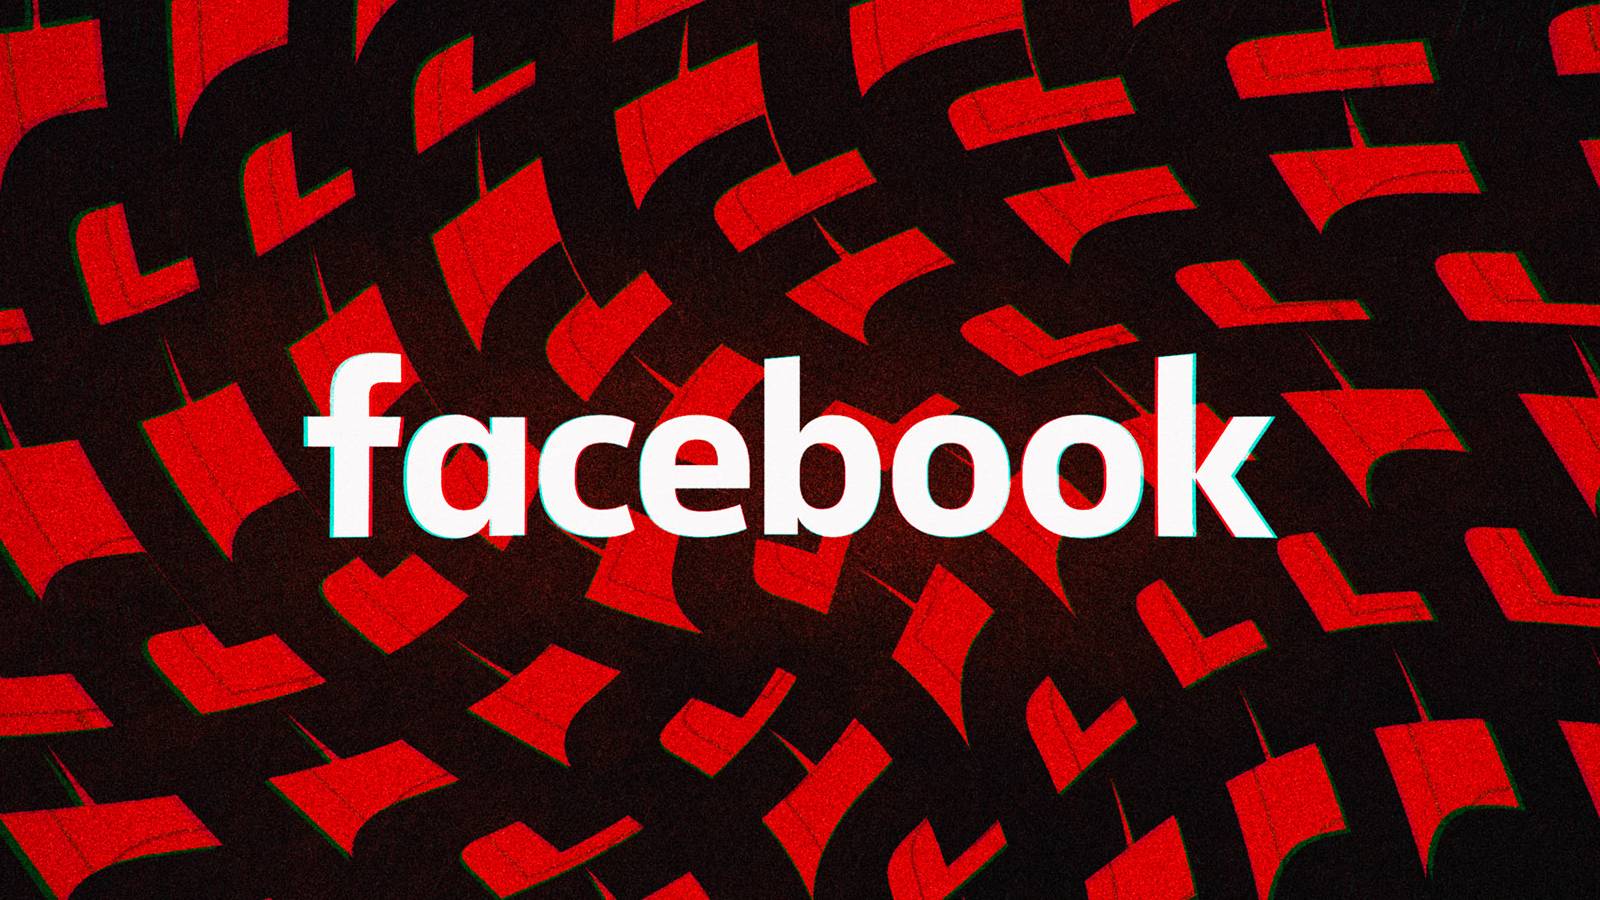 Facebook Update vine cu Noutati pentru Aplicatia de Telefoane si Tablete